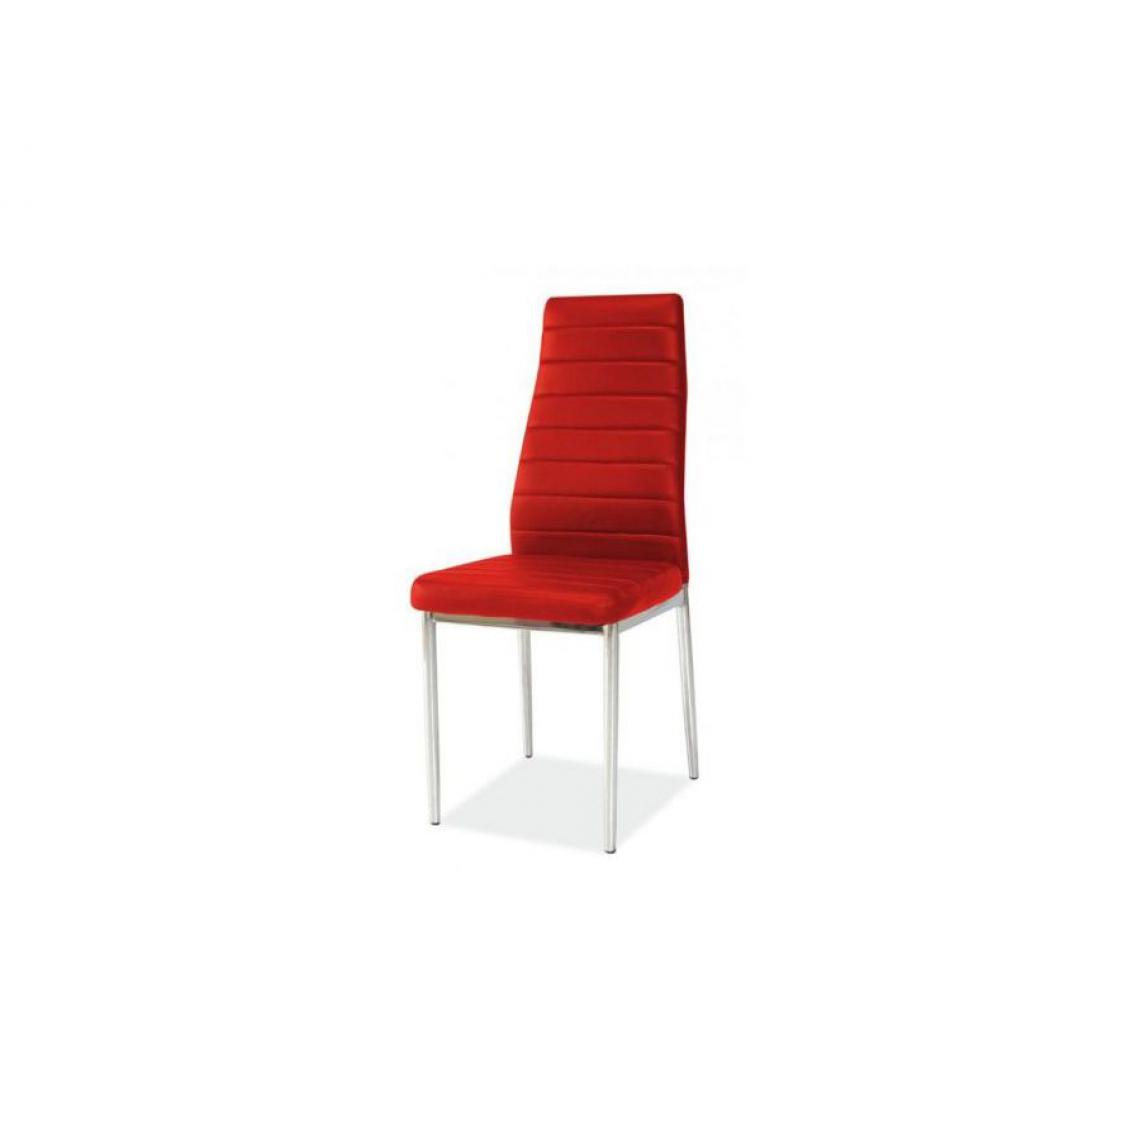 Hucoco - JOSSAN | Chaise élégante salle à manger salon cuisine | Dimensions : 96x40x38cm | Rembourrage en cuir écologique | Style moderne - Rouge - Chaises